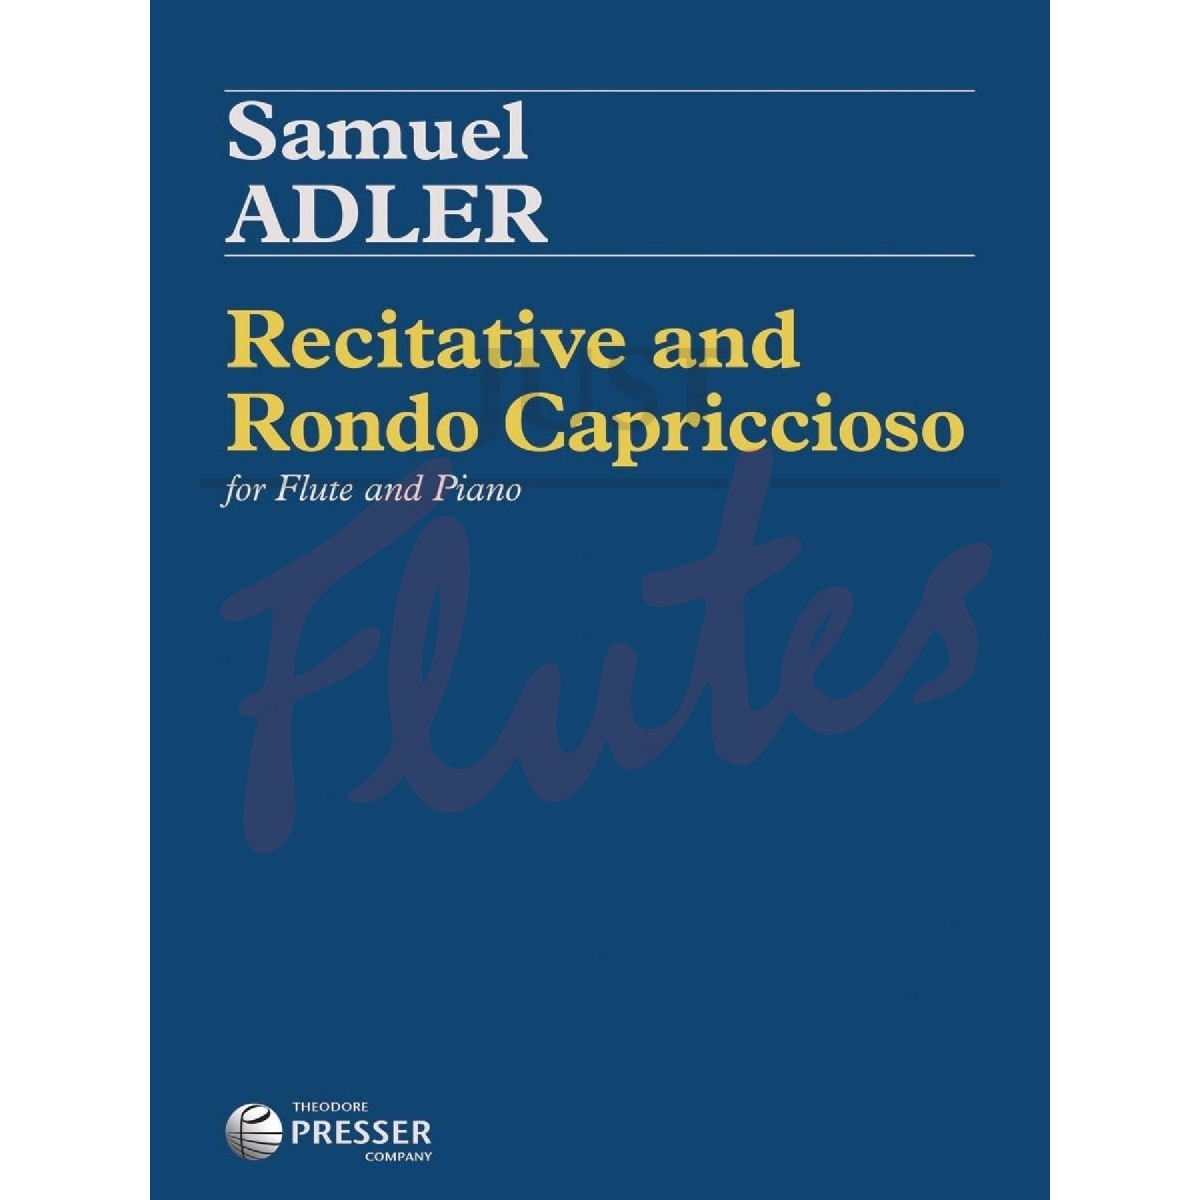 Recitative and Rondo Capriccioso for Flute and Piano